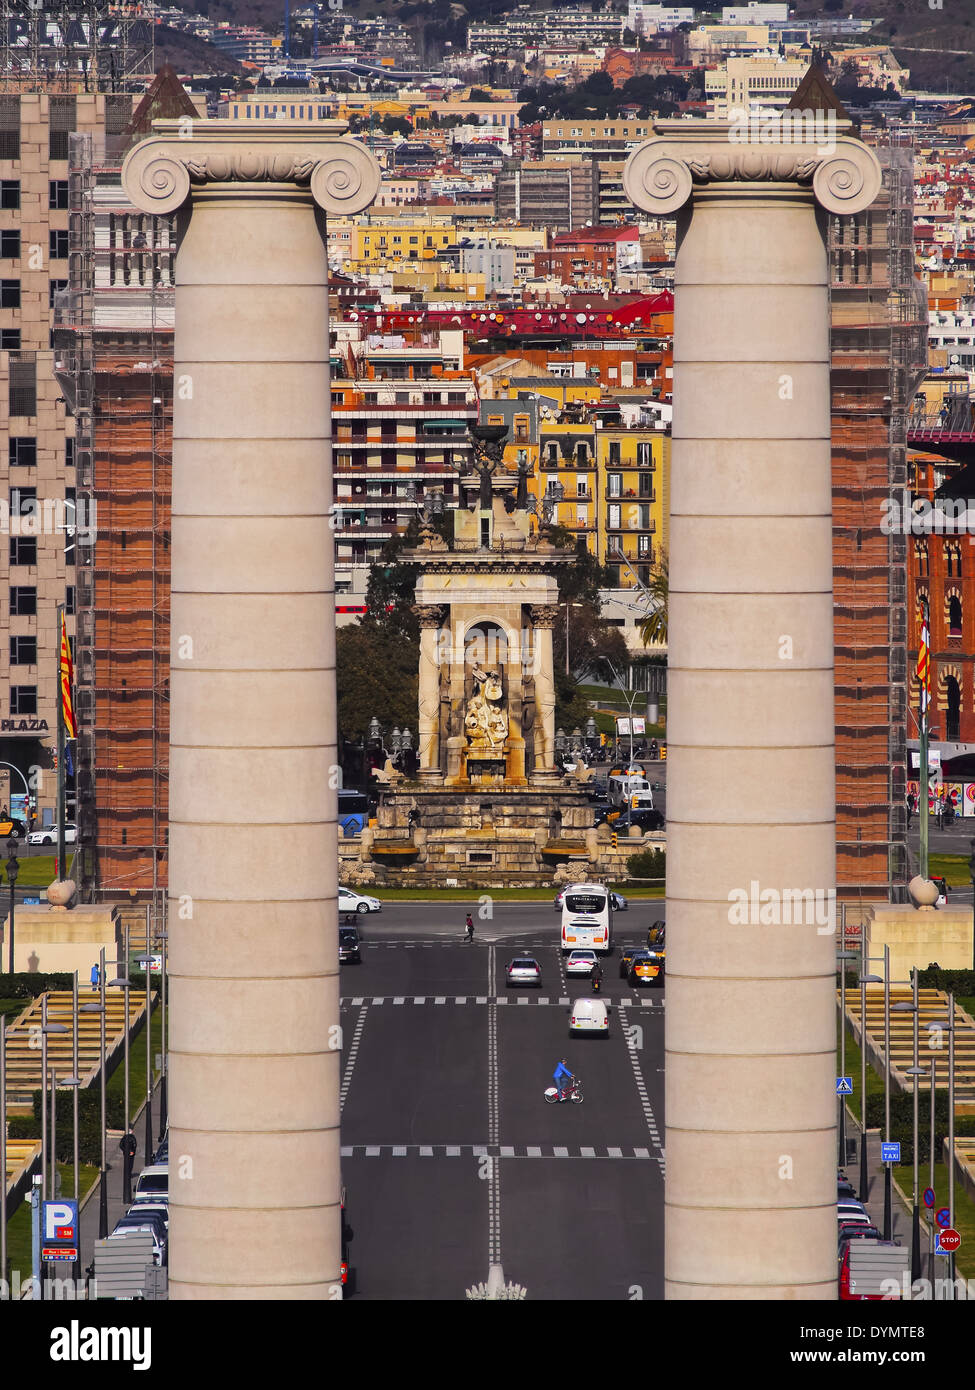 Plaça Espanya - Piazza di Spagna a Barcellona, in Catalogna, Spagna Foto Stock